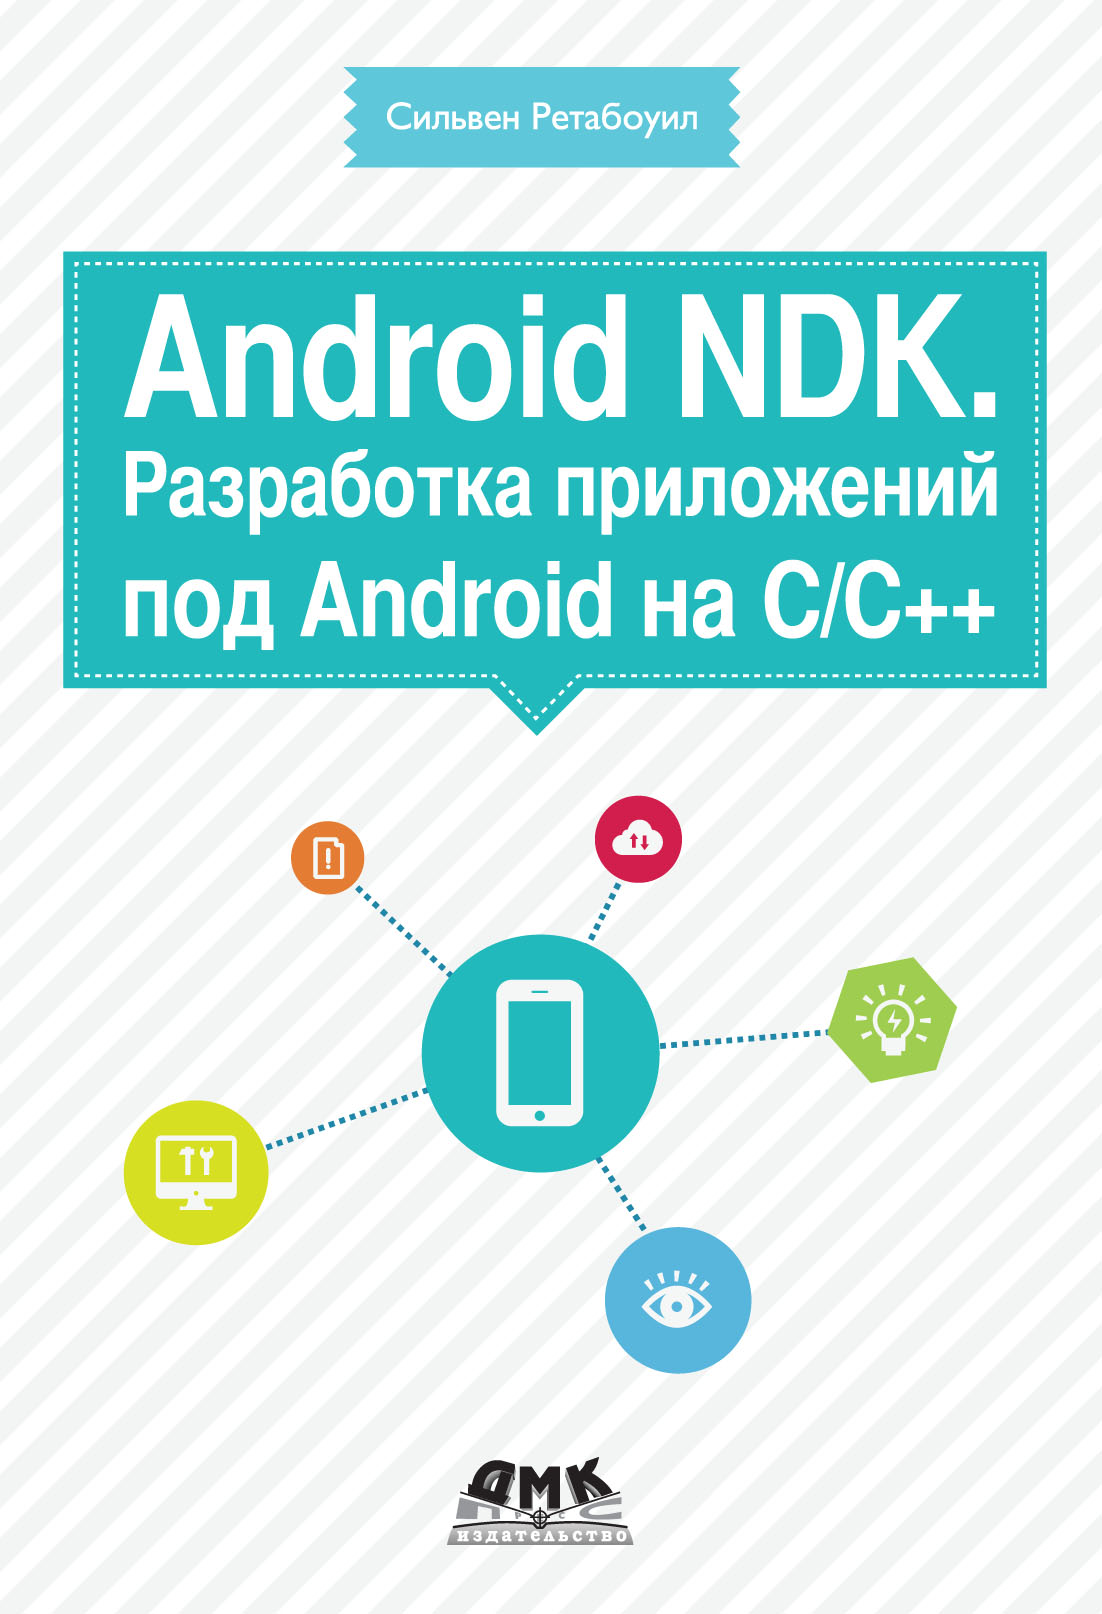 Книга  Android NDK. Разработка приложений под Android на С/С++ созданная Сильвен Ретабоуил, Александр Киселев может относится к жанру зарубежная компьютерная литература, ОС и сети, программирование, программы. Стоимость электронной книги Android NDK. Разработка приложений под Android на С/С++ с идентификатором 6106457 составляет 439.00 руб.